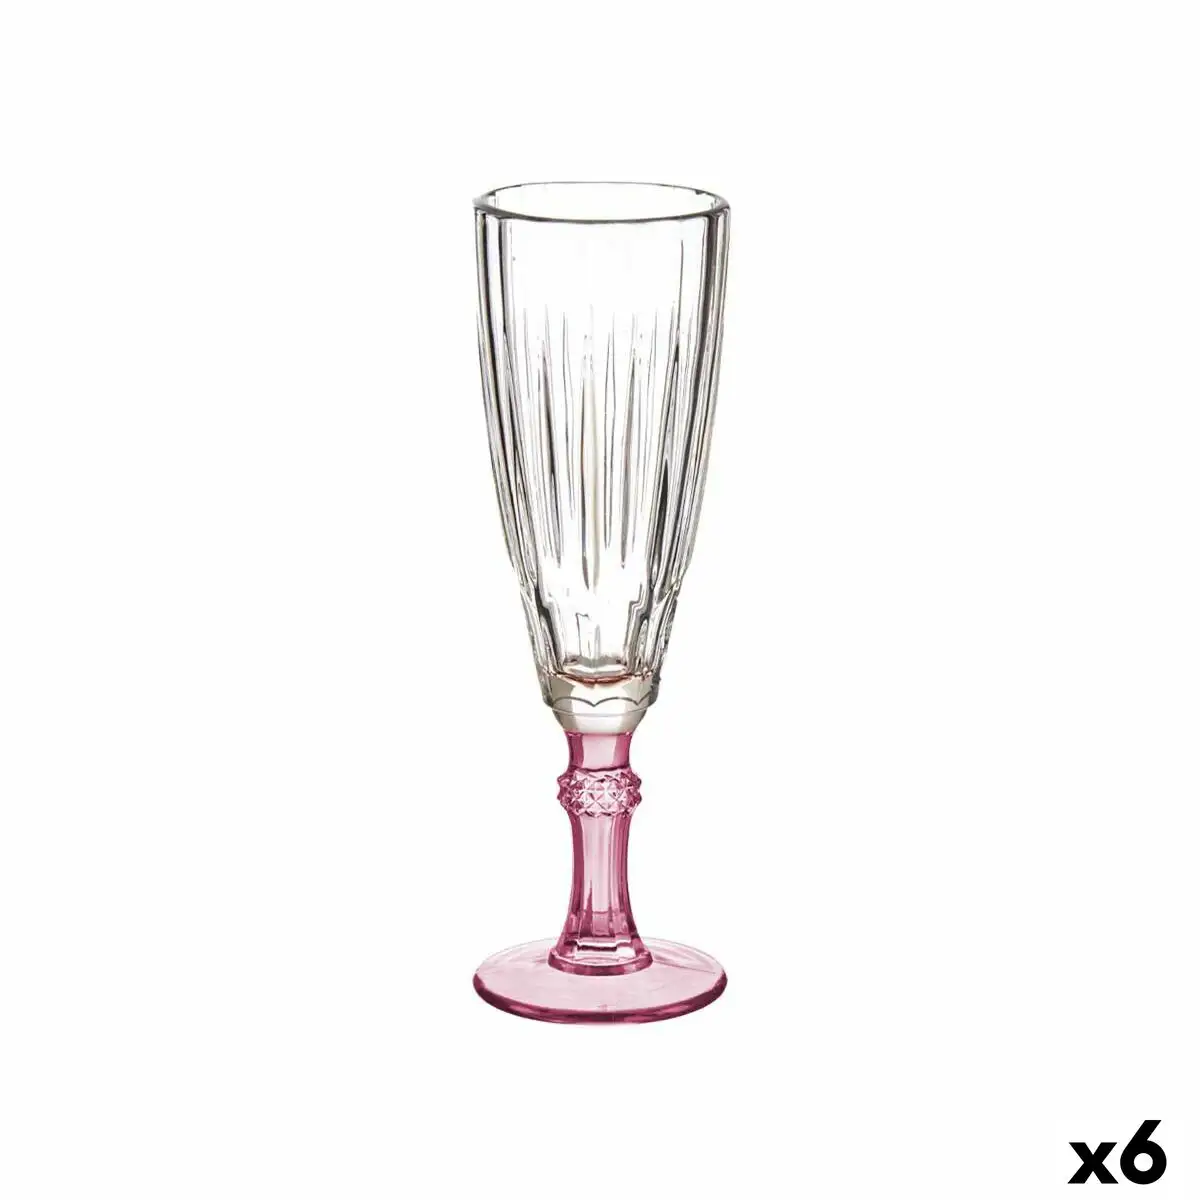 Coupe de champagne verre rose 6 unites 170 ml _4438. DIAYTAR SENEGAL - Votre Portail Vers l'Exclusivité. Explorez notre boutique en ligne pour trouver des produits uniques et exclusifs, conçus pour les amateurs de qualité.